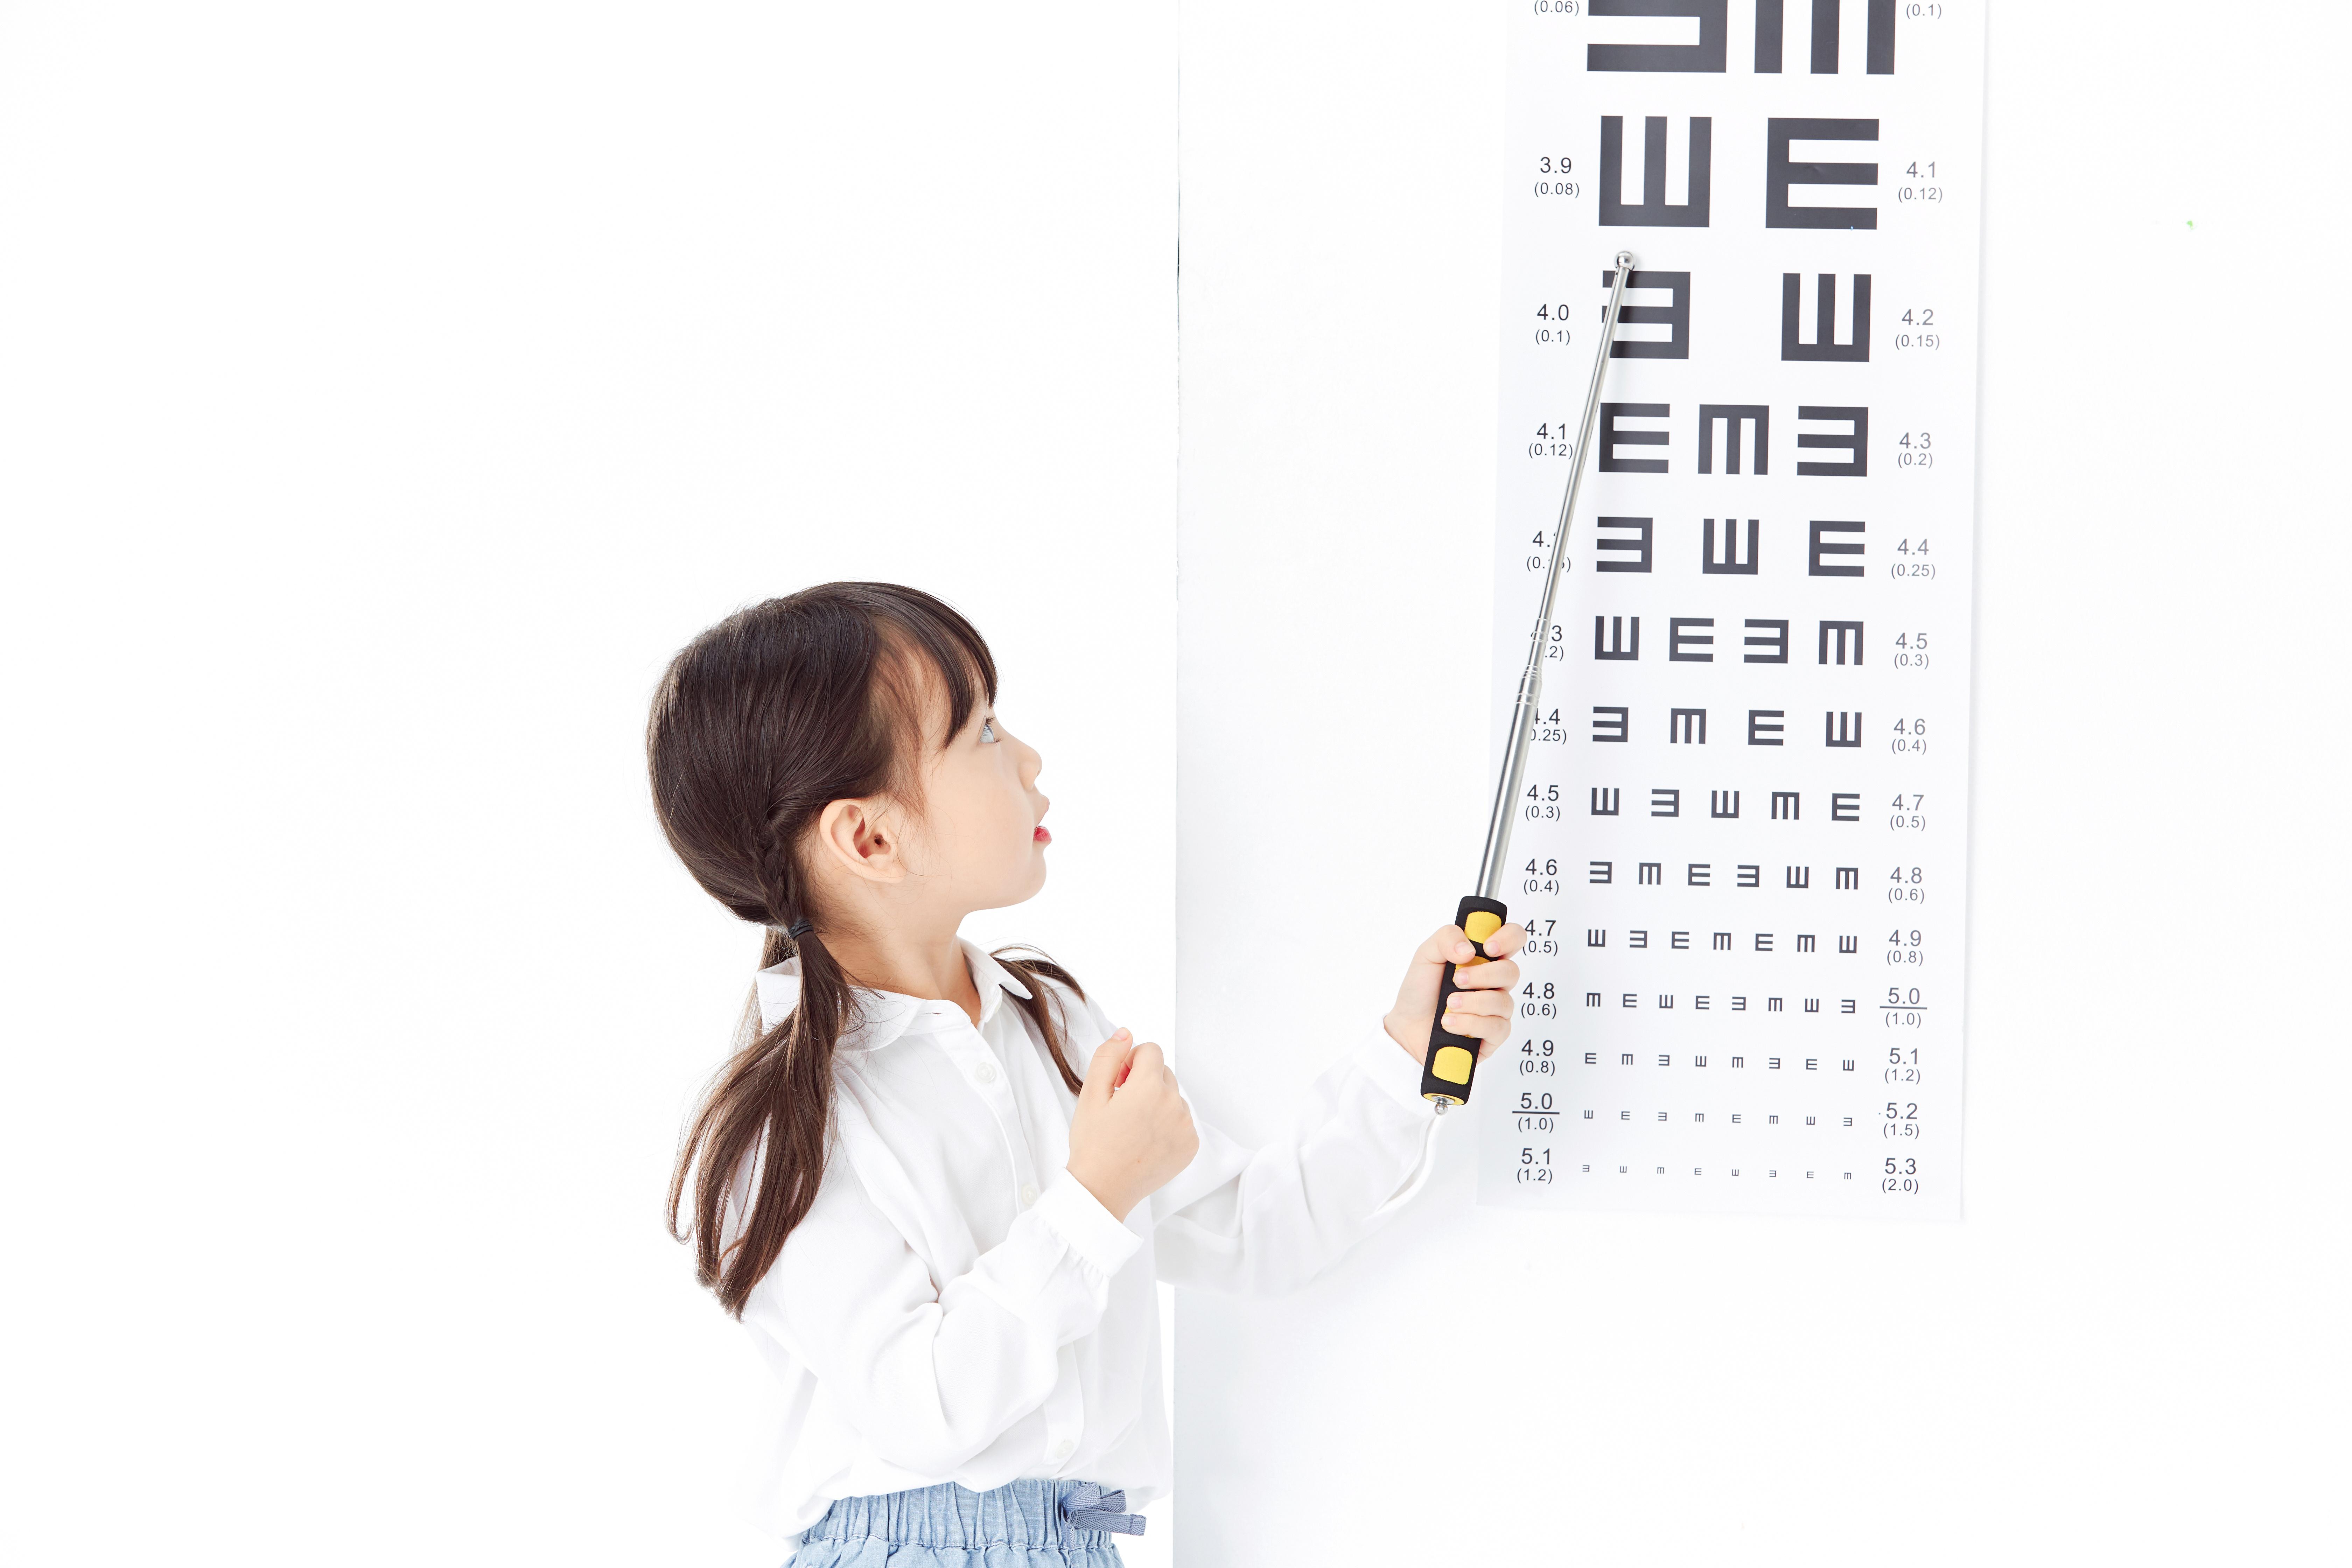 3岁左右,家长每隔6~12个月要带孩子定期检查视力和屈光度,以全面了解